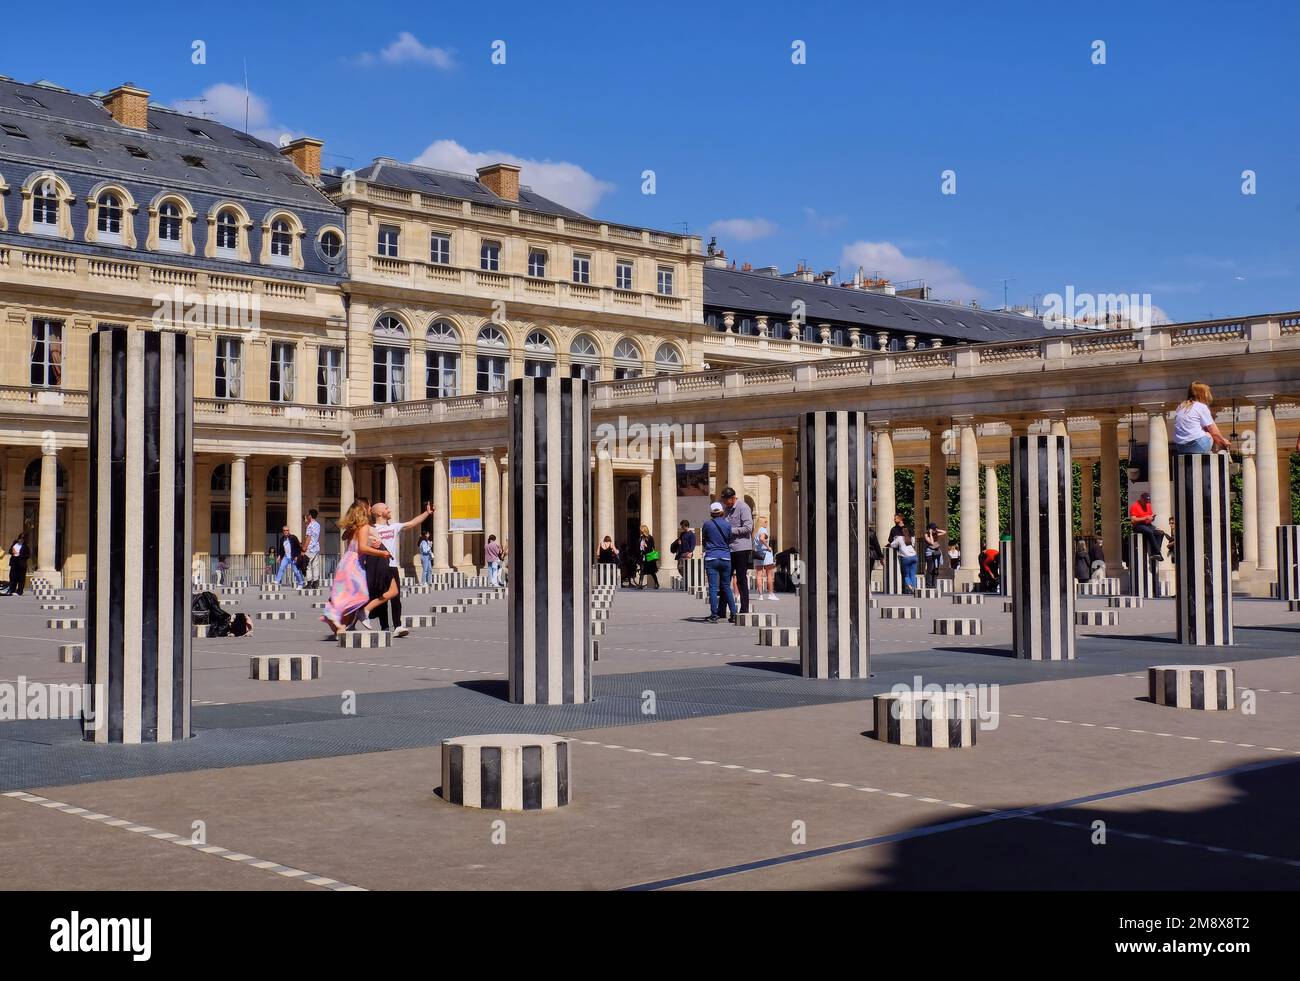 Paris: People enjoying the Colonnes de Buren (Les Deux Plateaux) by Daniel Buren in Cour d'Honneur of the Palais Royal, Paris, France Stock Photo